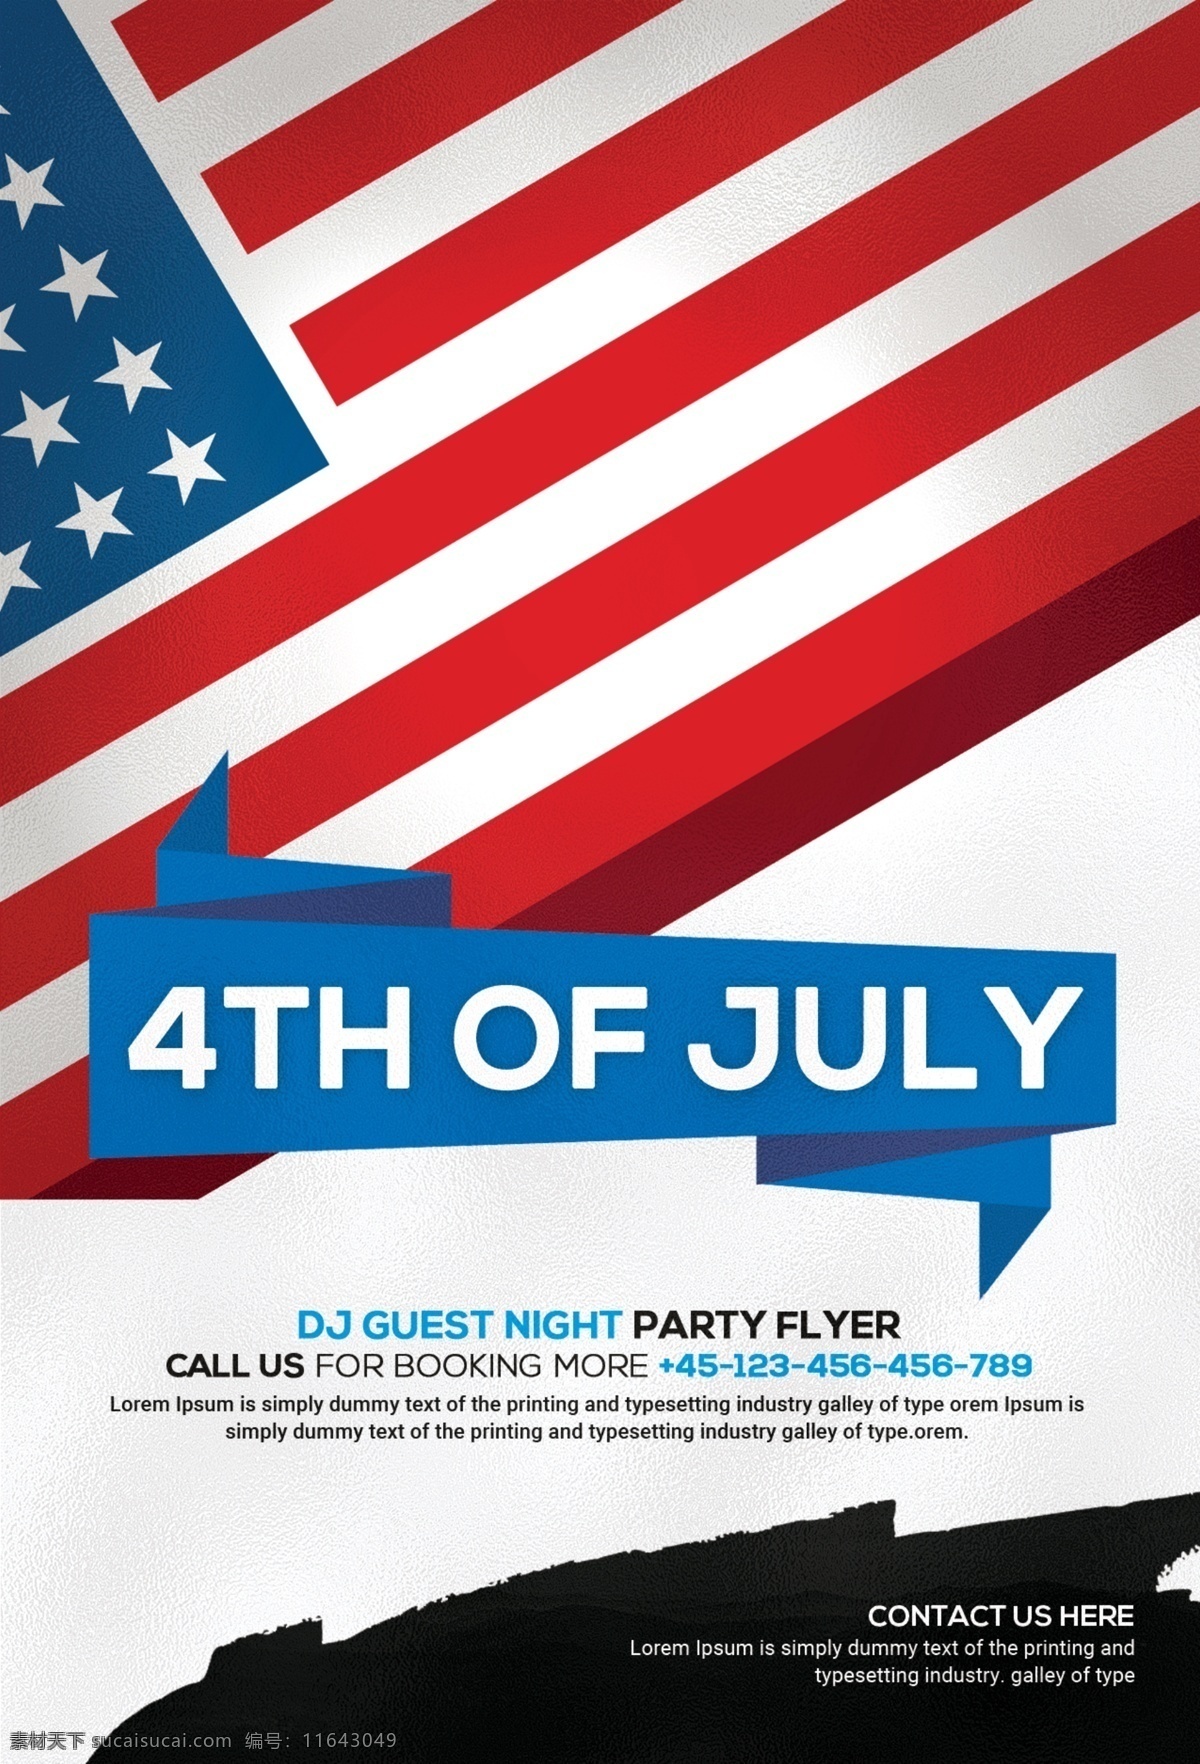 月 日 传单 模板 第四 美国独立日 美国的一天 美国 气球 生日 蓝色 庆祝 庆祝活动 颜色 事件 巨星 旗 传单模板 快乐 独立 独立日 七月 夜店 派对 海报 红色 星